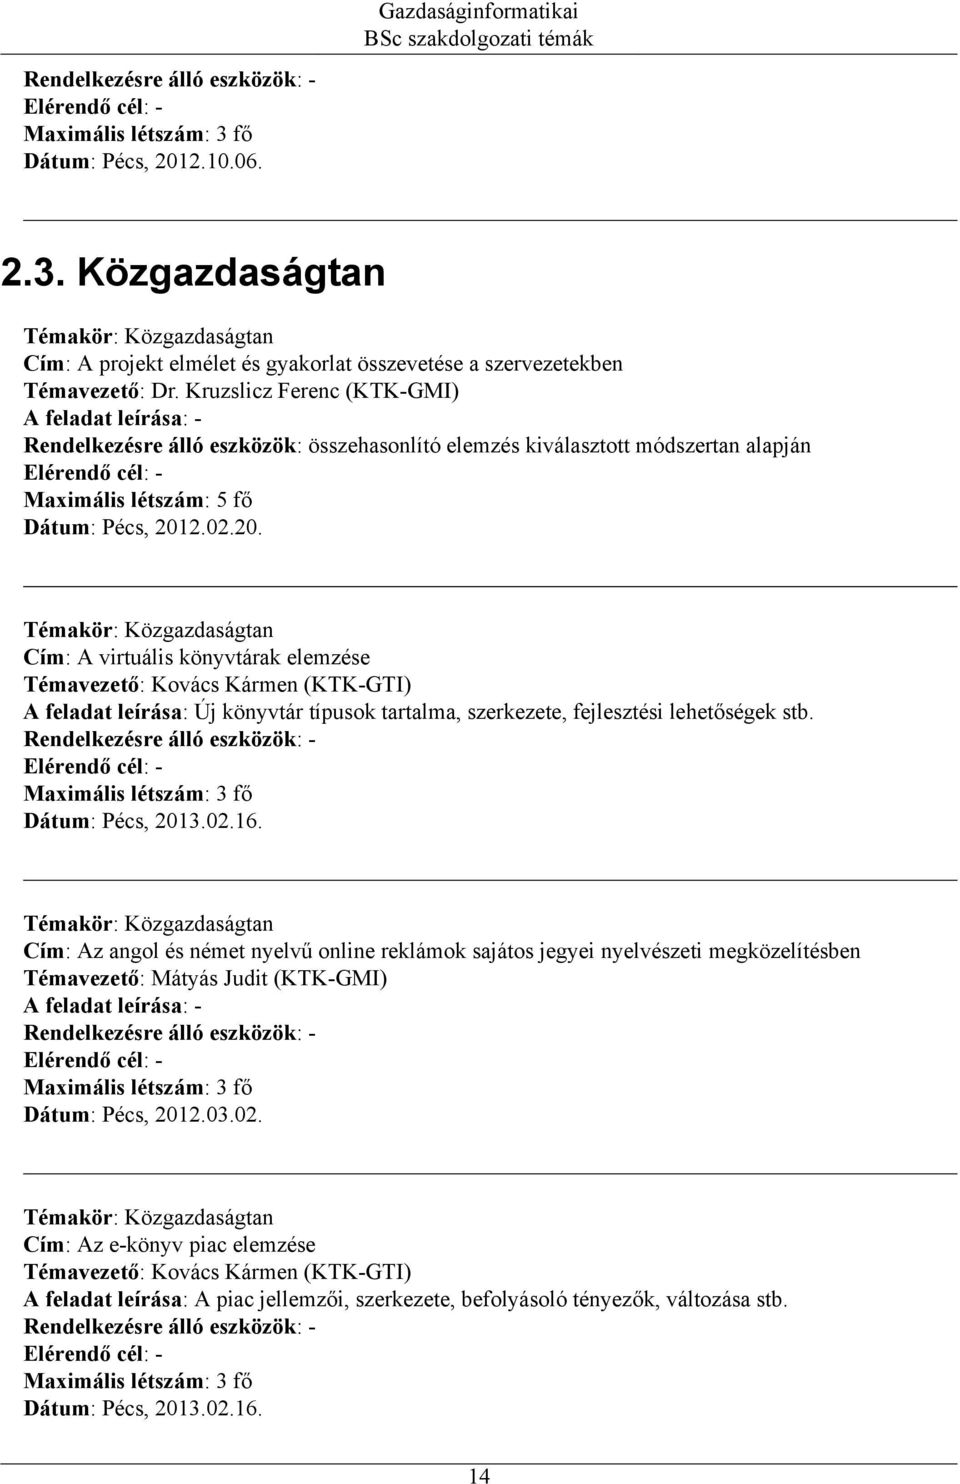 leírása: Új könyvtár típusok tartalma, szerkezete, fejlesztési lehetőségek stb. Maximális létszám: 3 fő Dátum: Pécs, 2013.02.16.